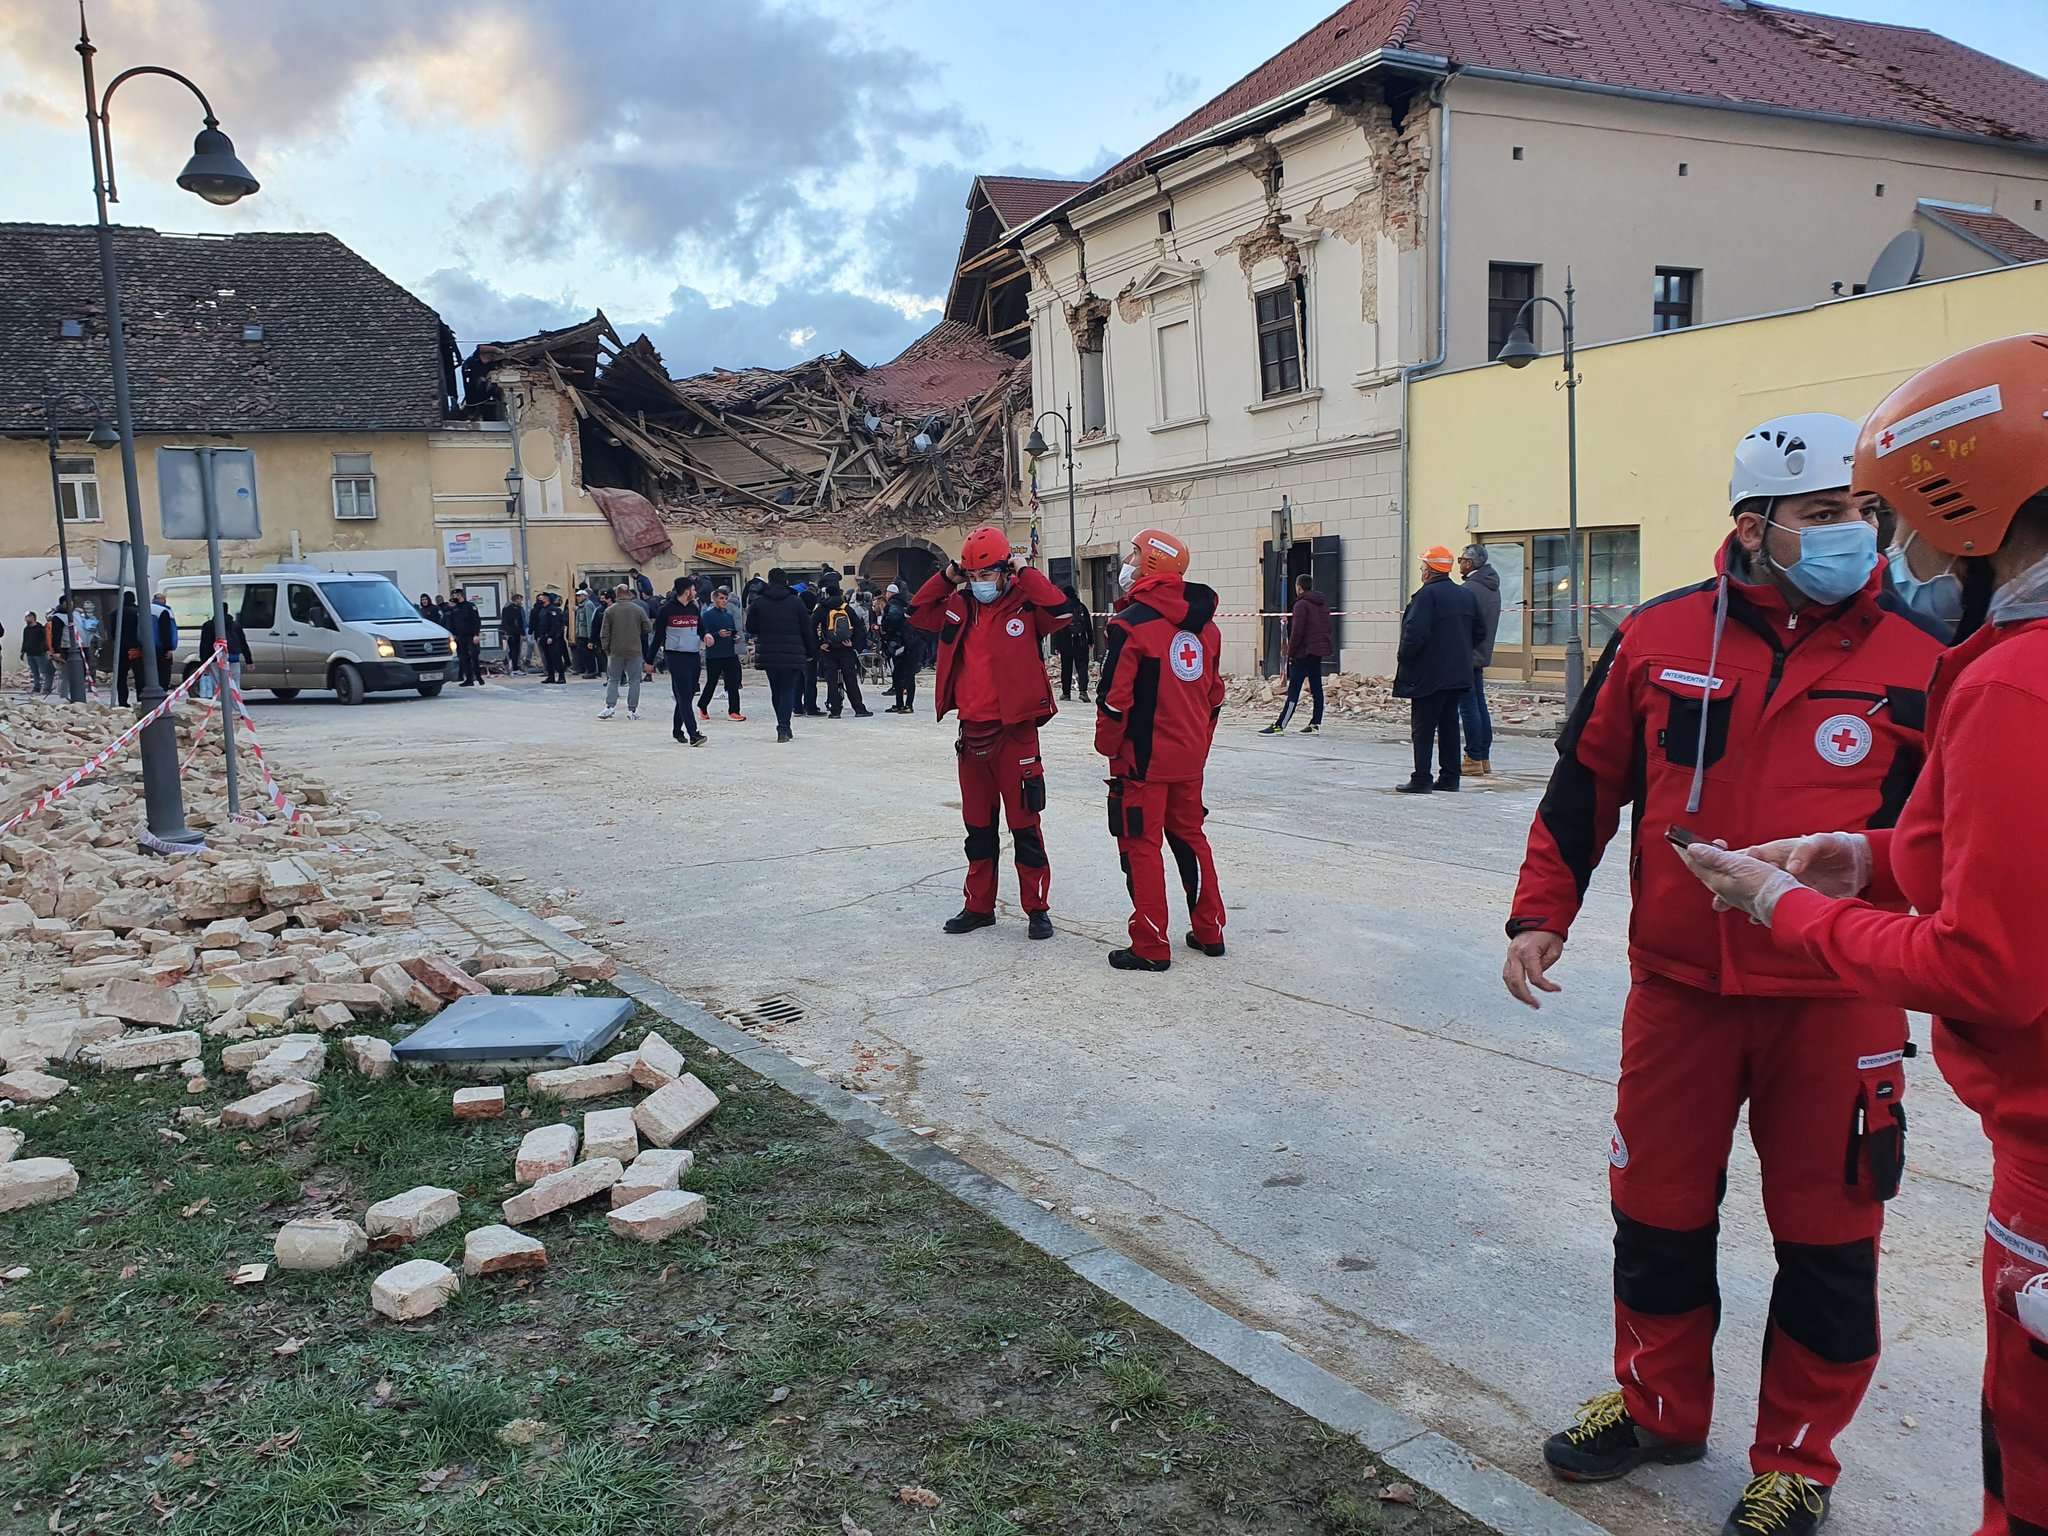 Hrvatski Crveni križ (Croce Rossa Croata) – Petrinji (HR), I primi soccorsi alla popolazione dopo il sisma di oggi di Magnitudo 6.4